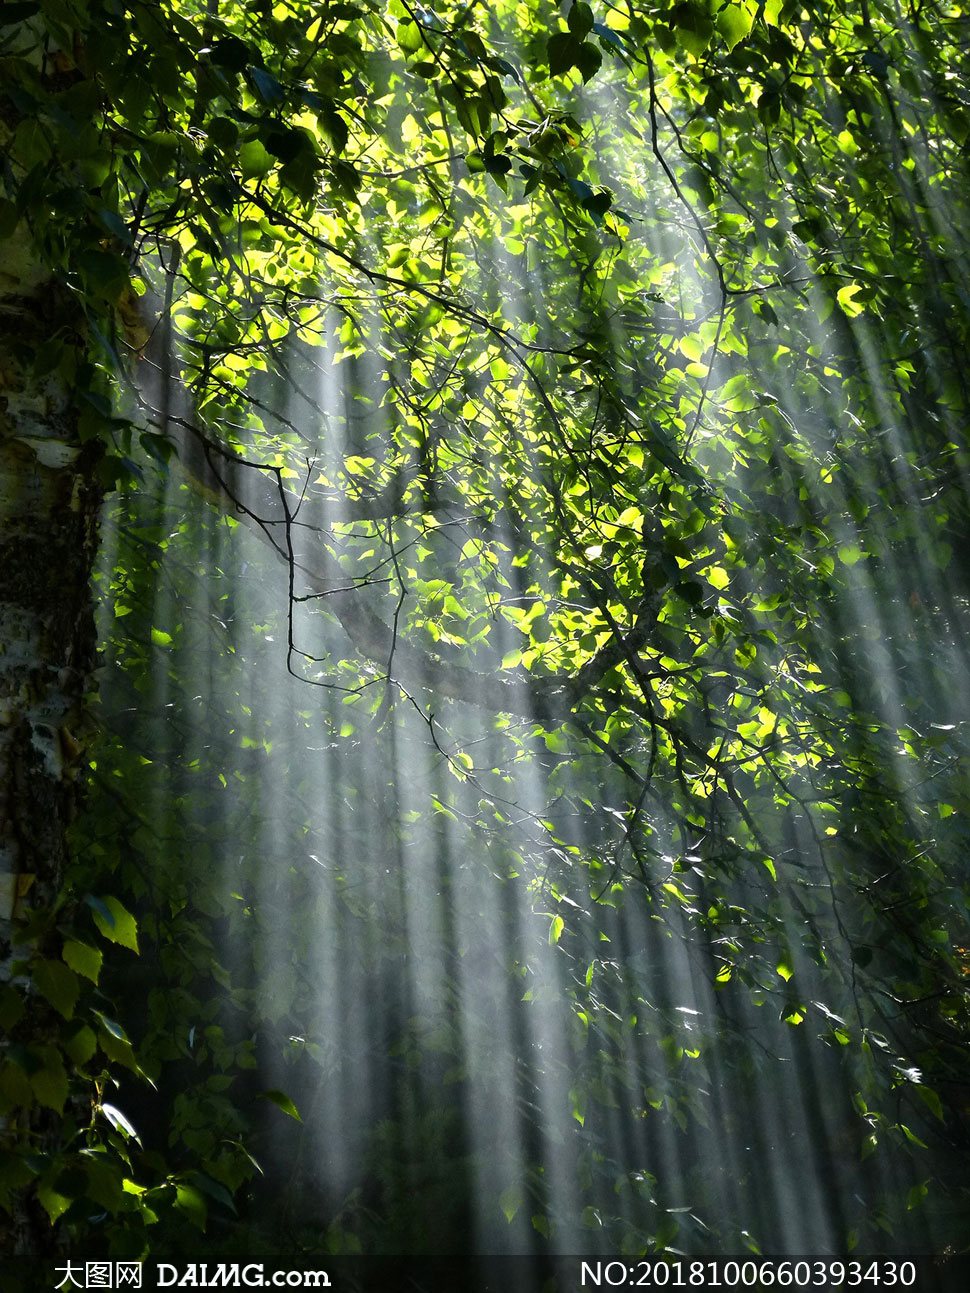 有阳光照射进来的树林摄影高清图片